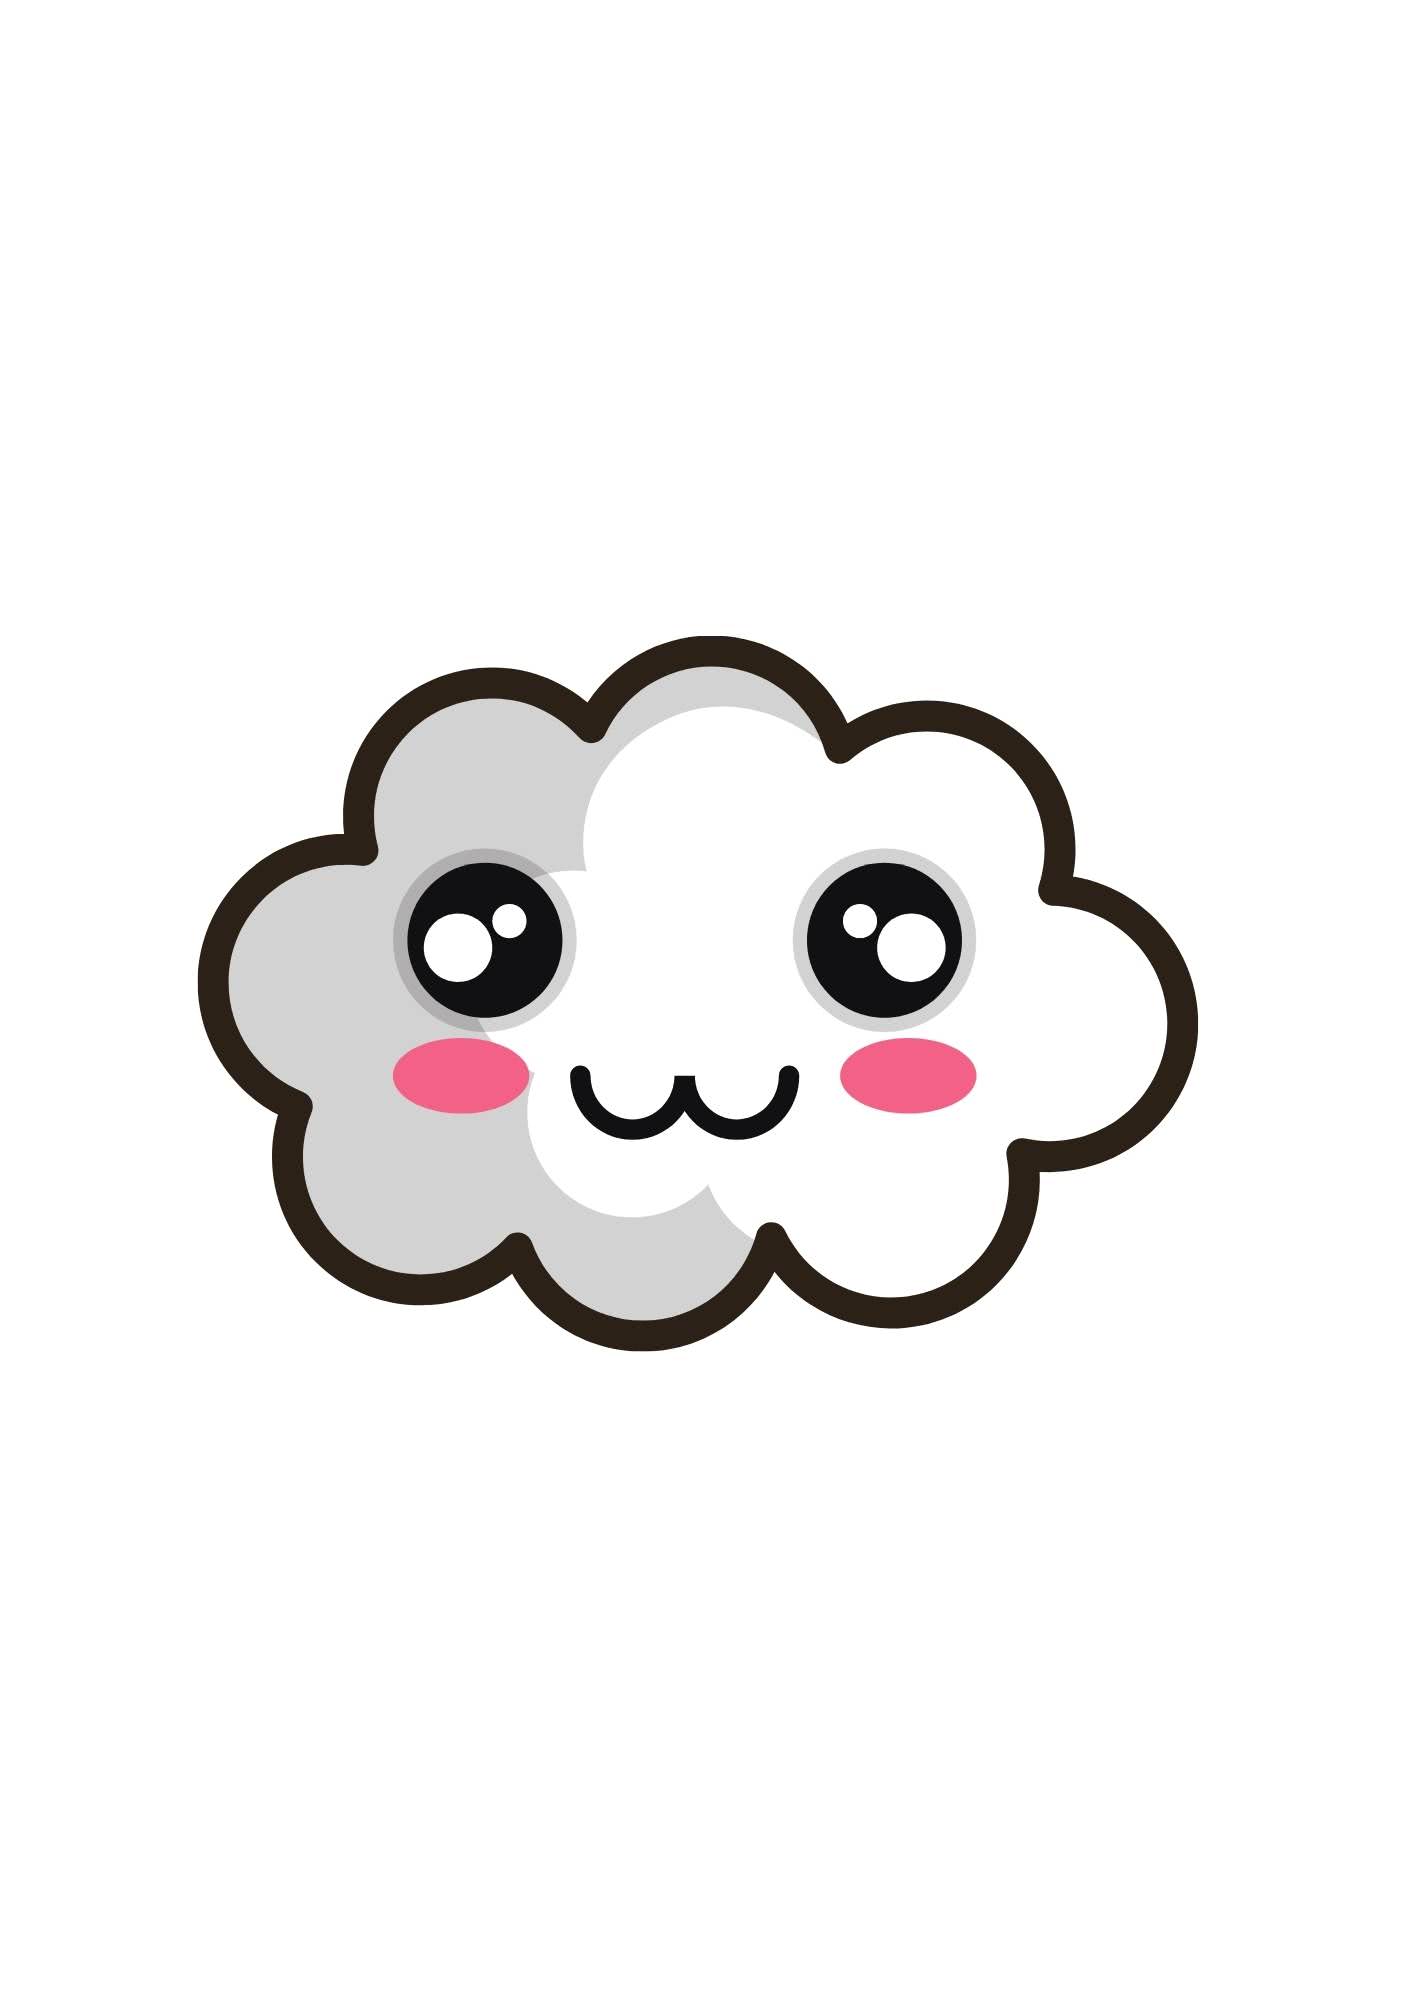 Molde de nuvens com carinha - 10 ideias para você!